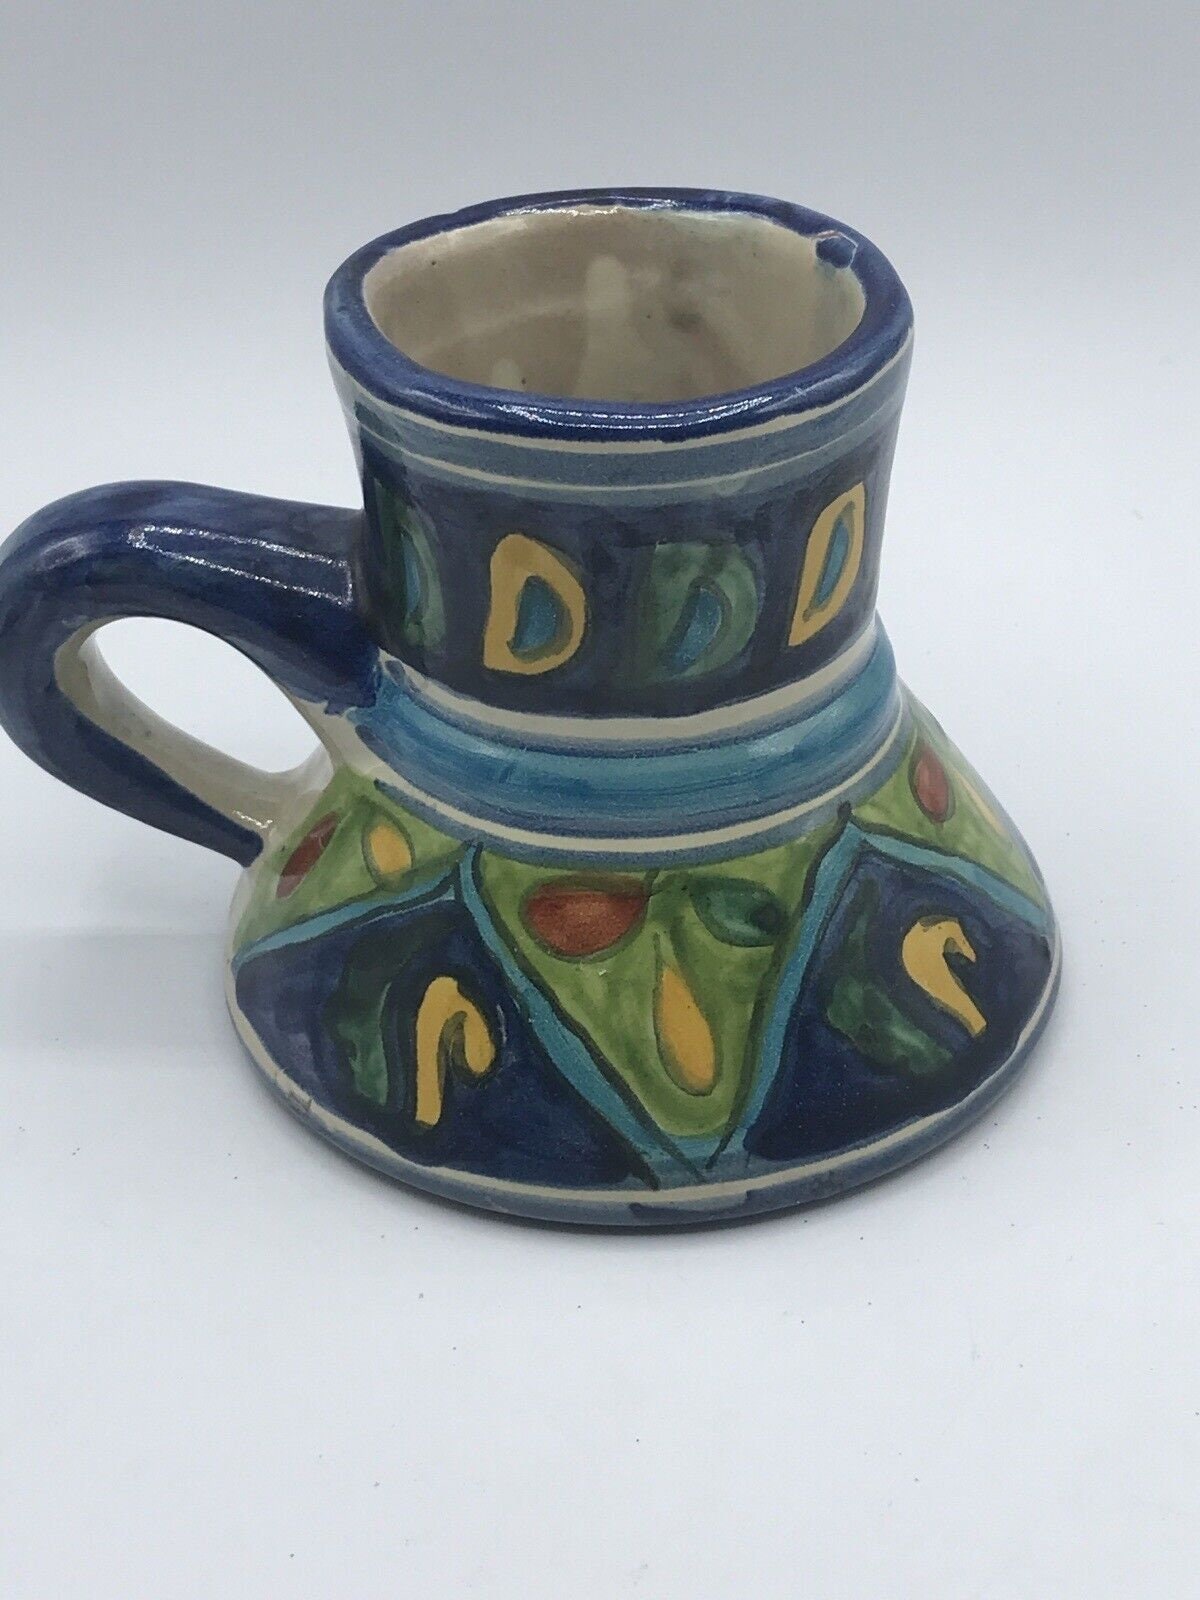 Vintage Georgia Ceramic No-spill Mug Cream Crackle Glaze 